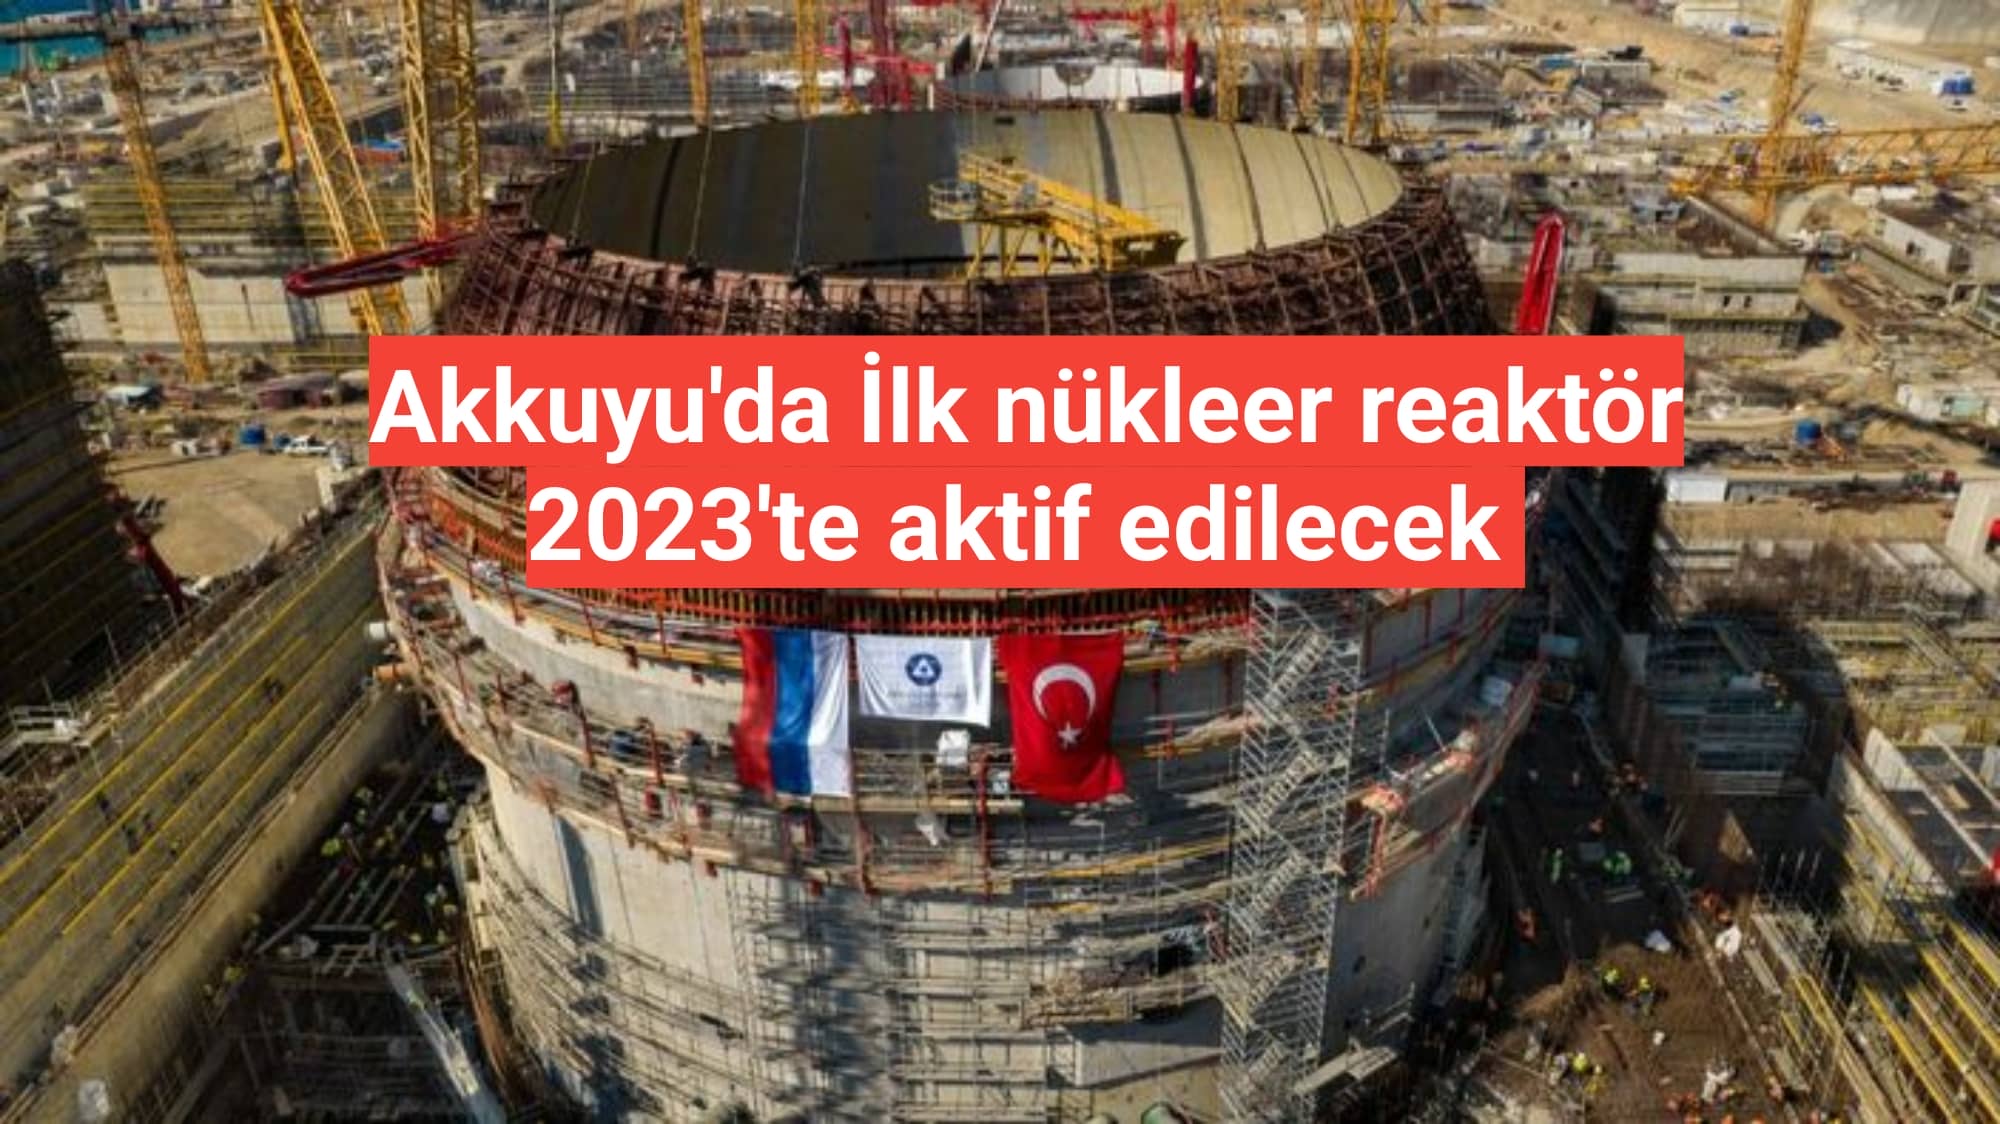 Akkuyu'da İlk nükleer reaktör 2023'te aktif edilecek